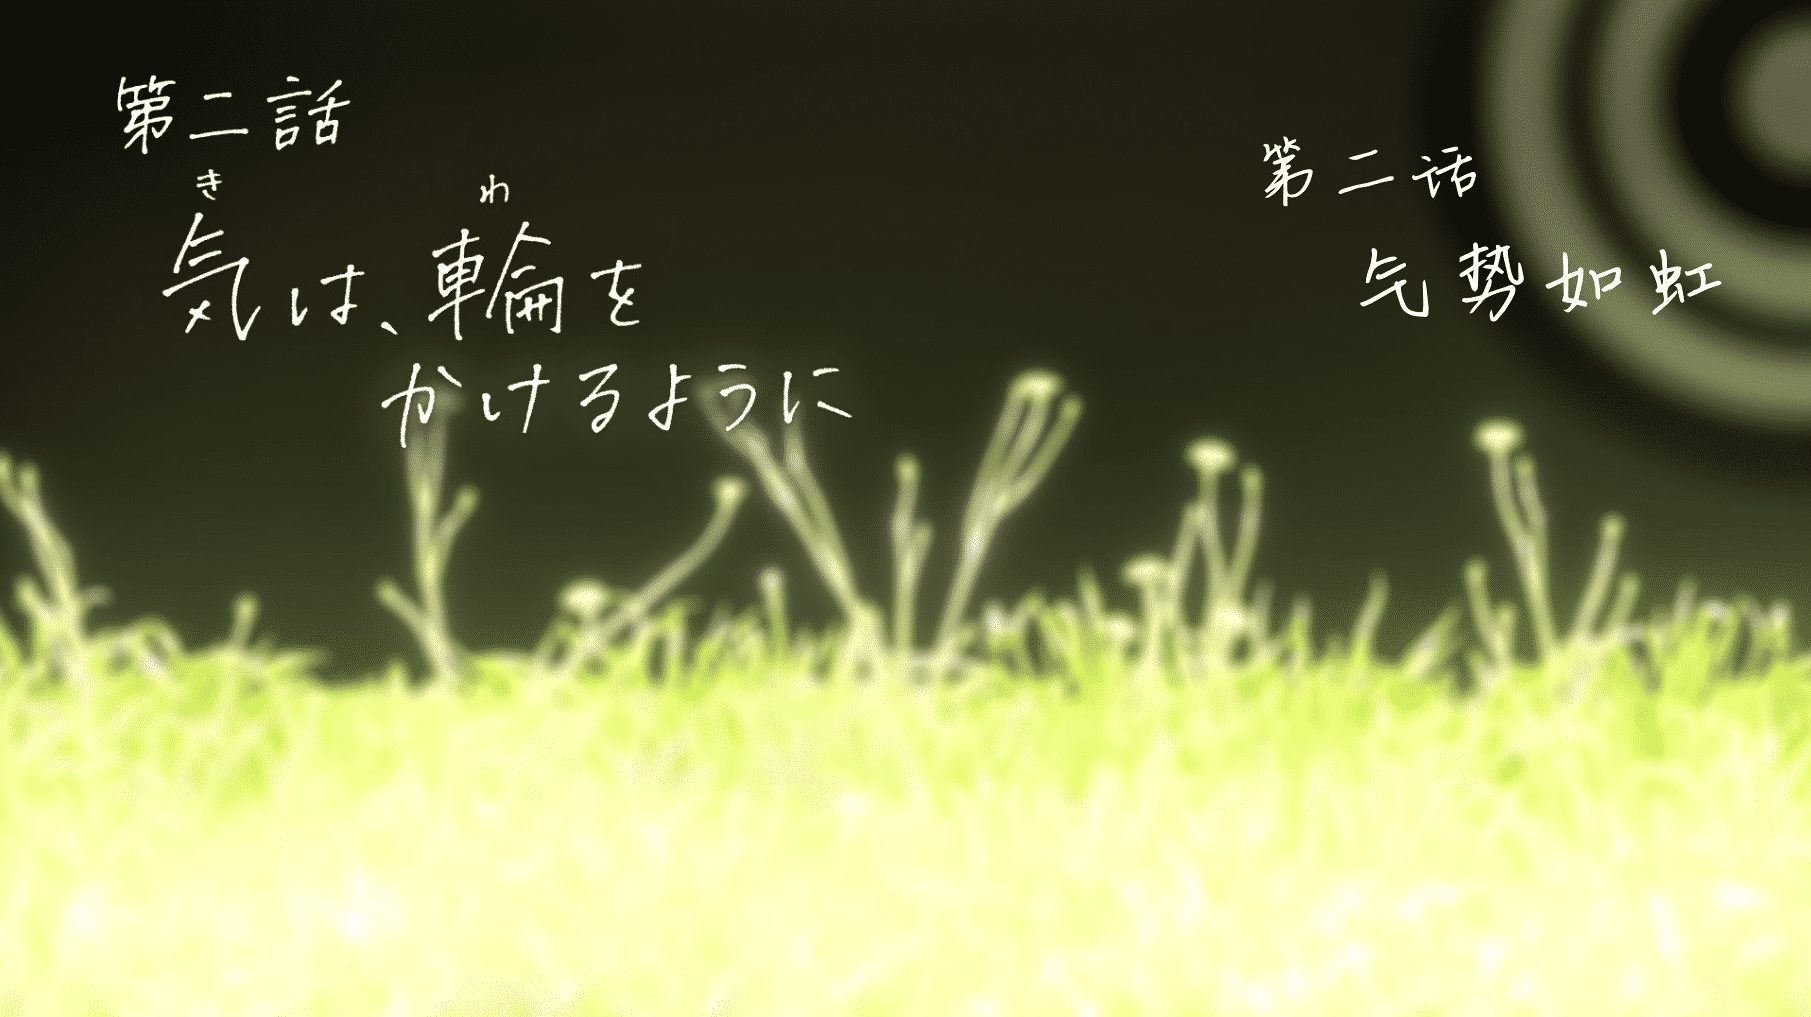 [猎户不鸽压制] 弦音 -联系的一箭- Tsurune：Tsunagari no Issha [02] [1080p] [简中内嵌] [2023年1月番]插图icecomic动漫-云之彼端,约定的地方(´･ᴗ･`)2